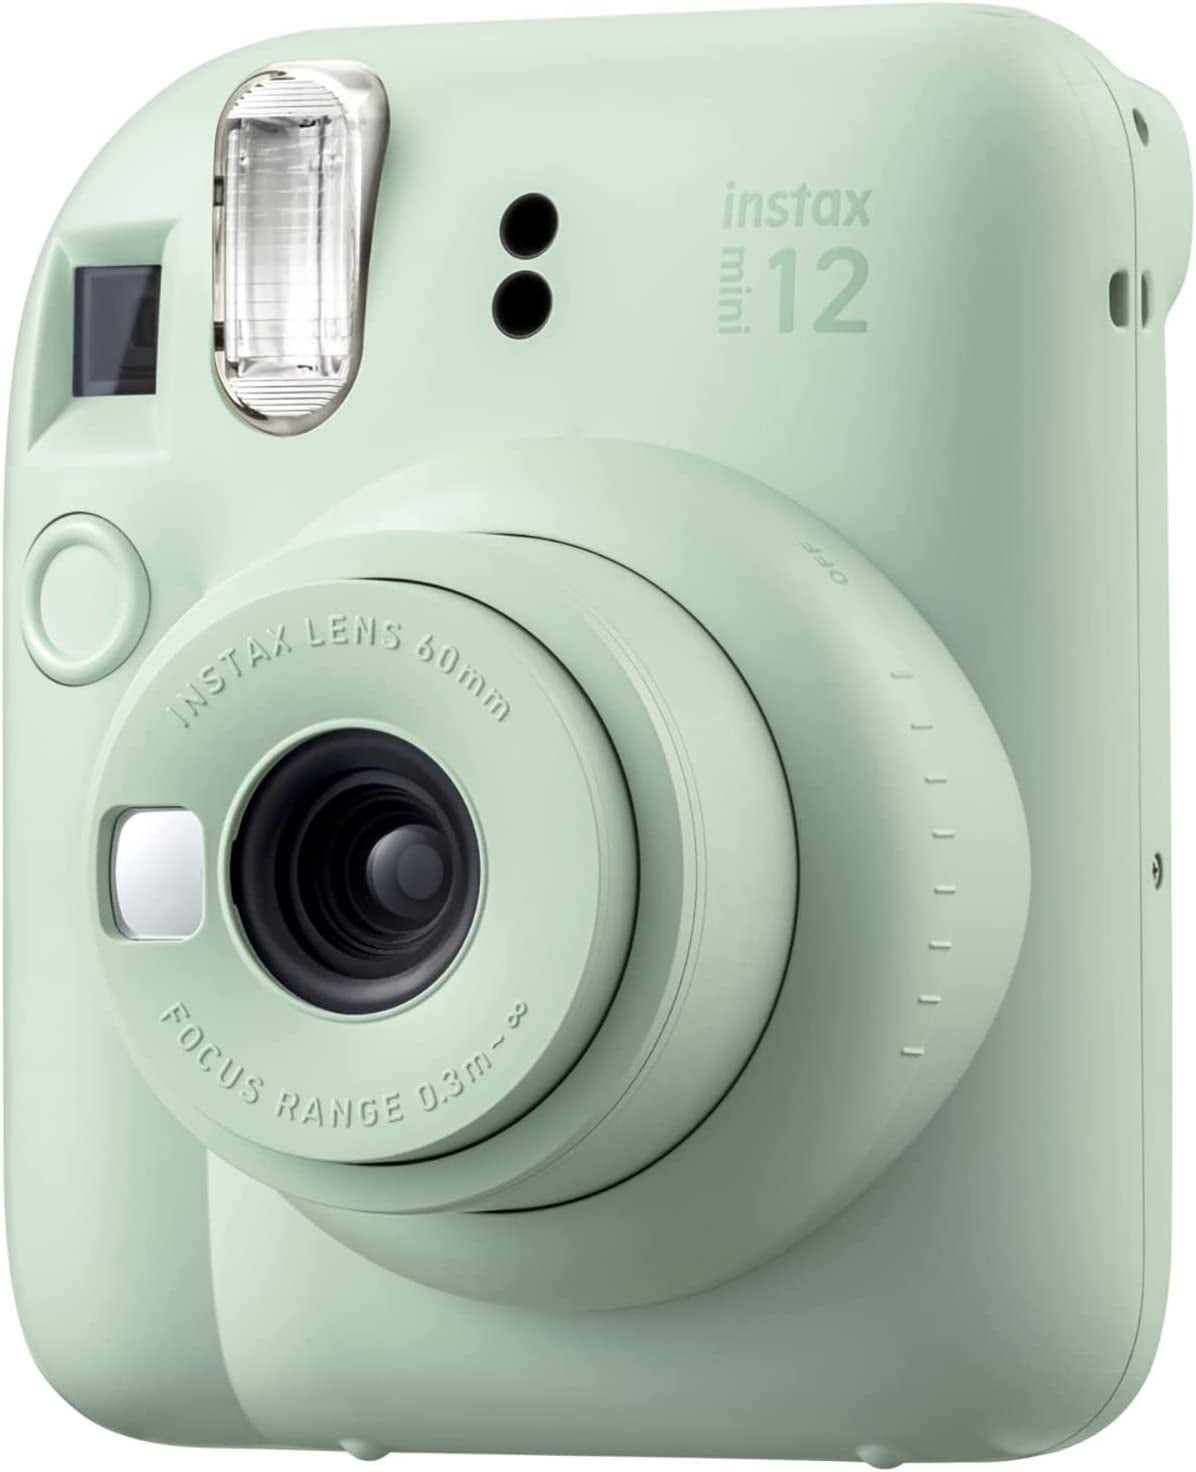 Fujifilm Instax Mini 12 instant camera in mint green